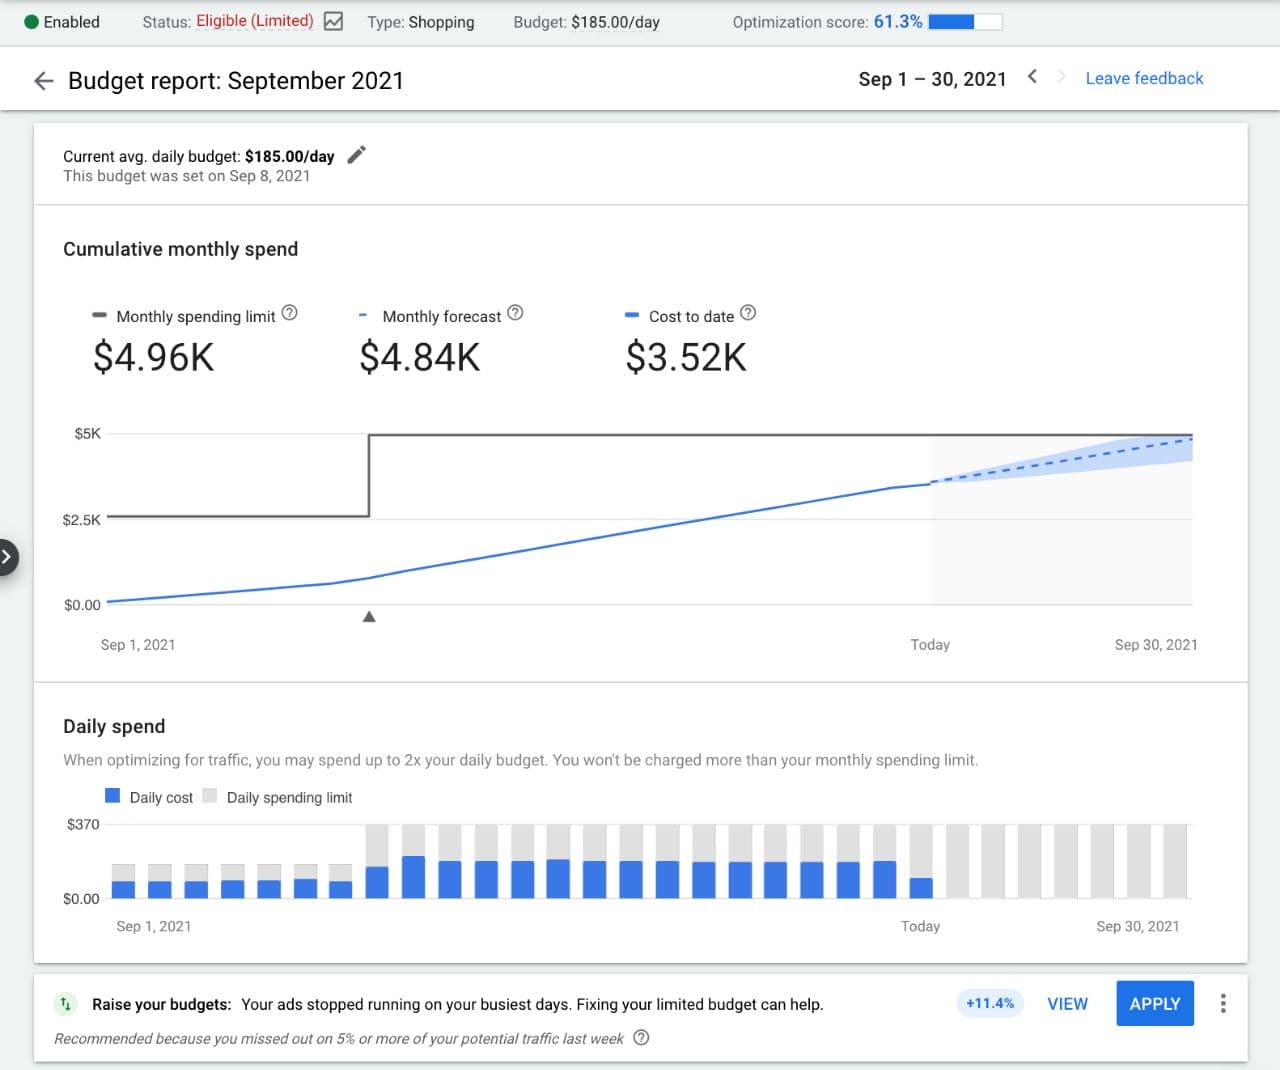 Новый отчет для визуализации данных бюджета кампании в Google Ads доступен в разделах «Кампании» и «Группа объявлений» вашего аккаунта. Вы можете узнать детальнее как найти и получить доступ к отчету о бюджете в Справочном центре Google Рекламы.